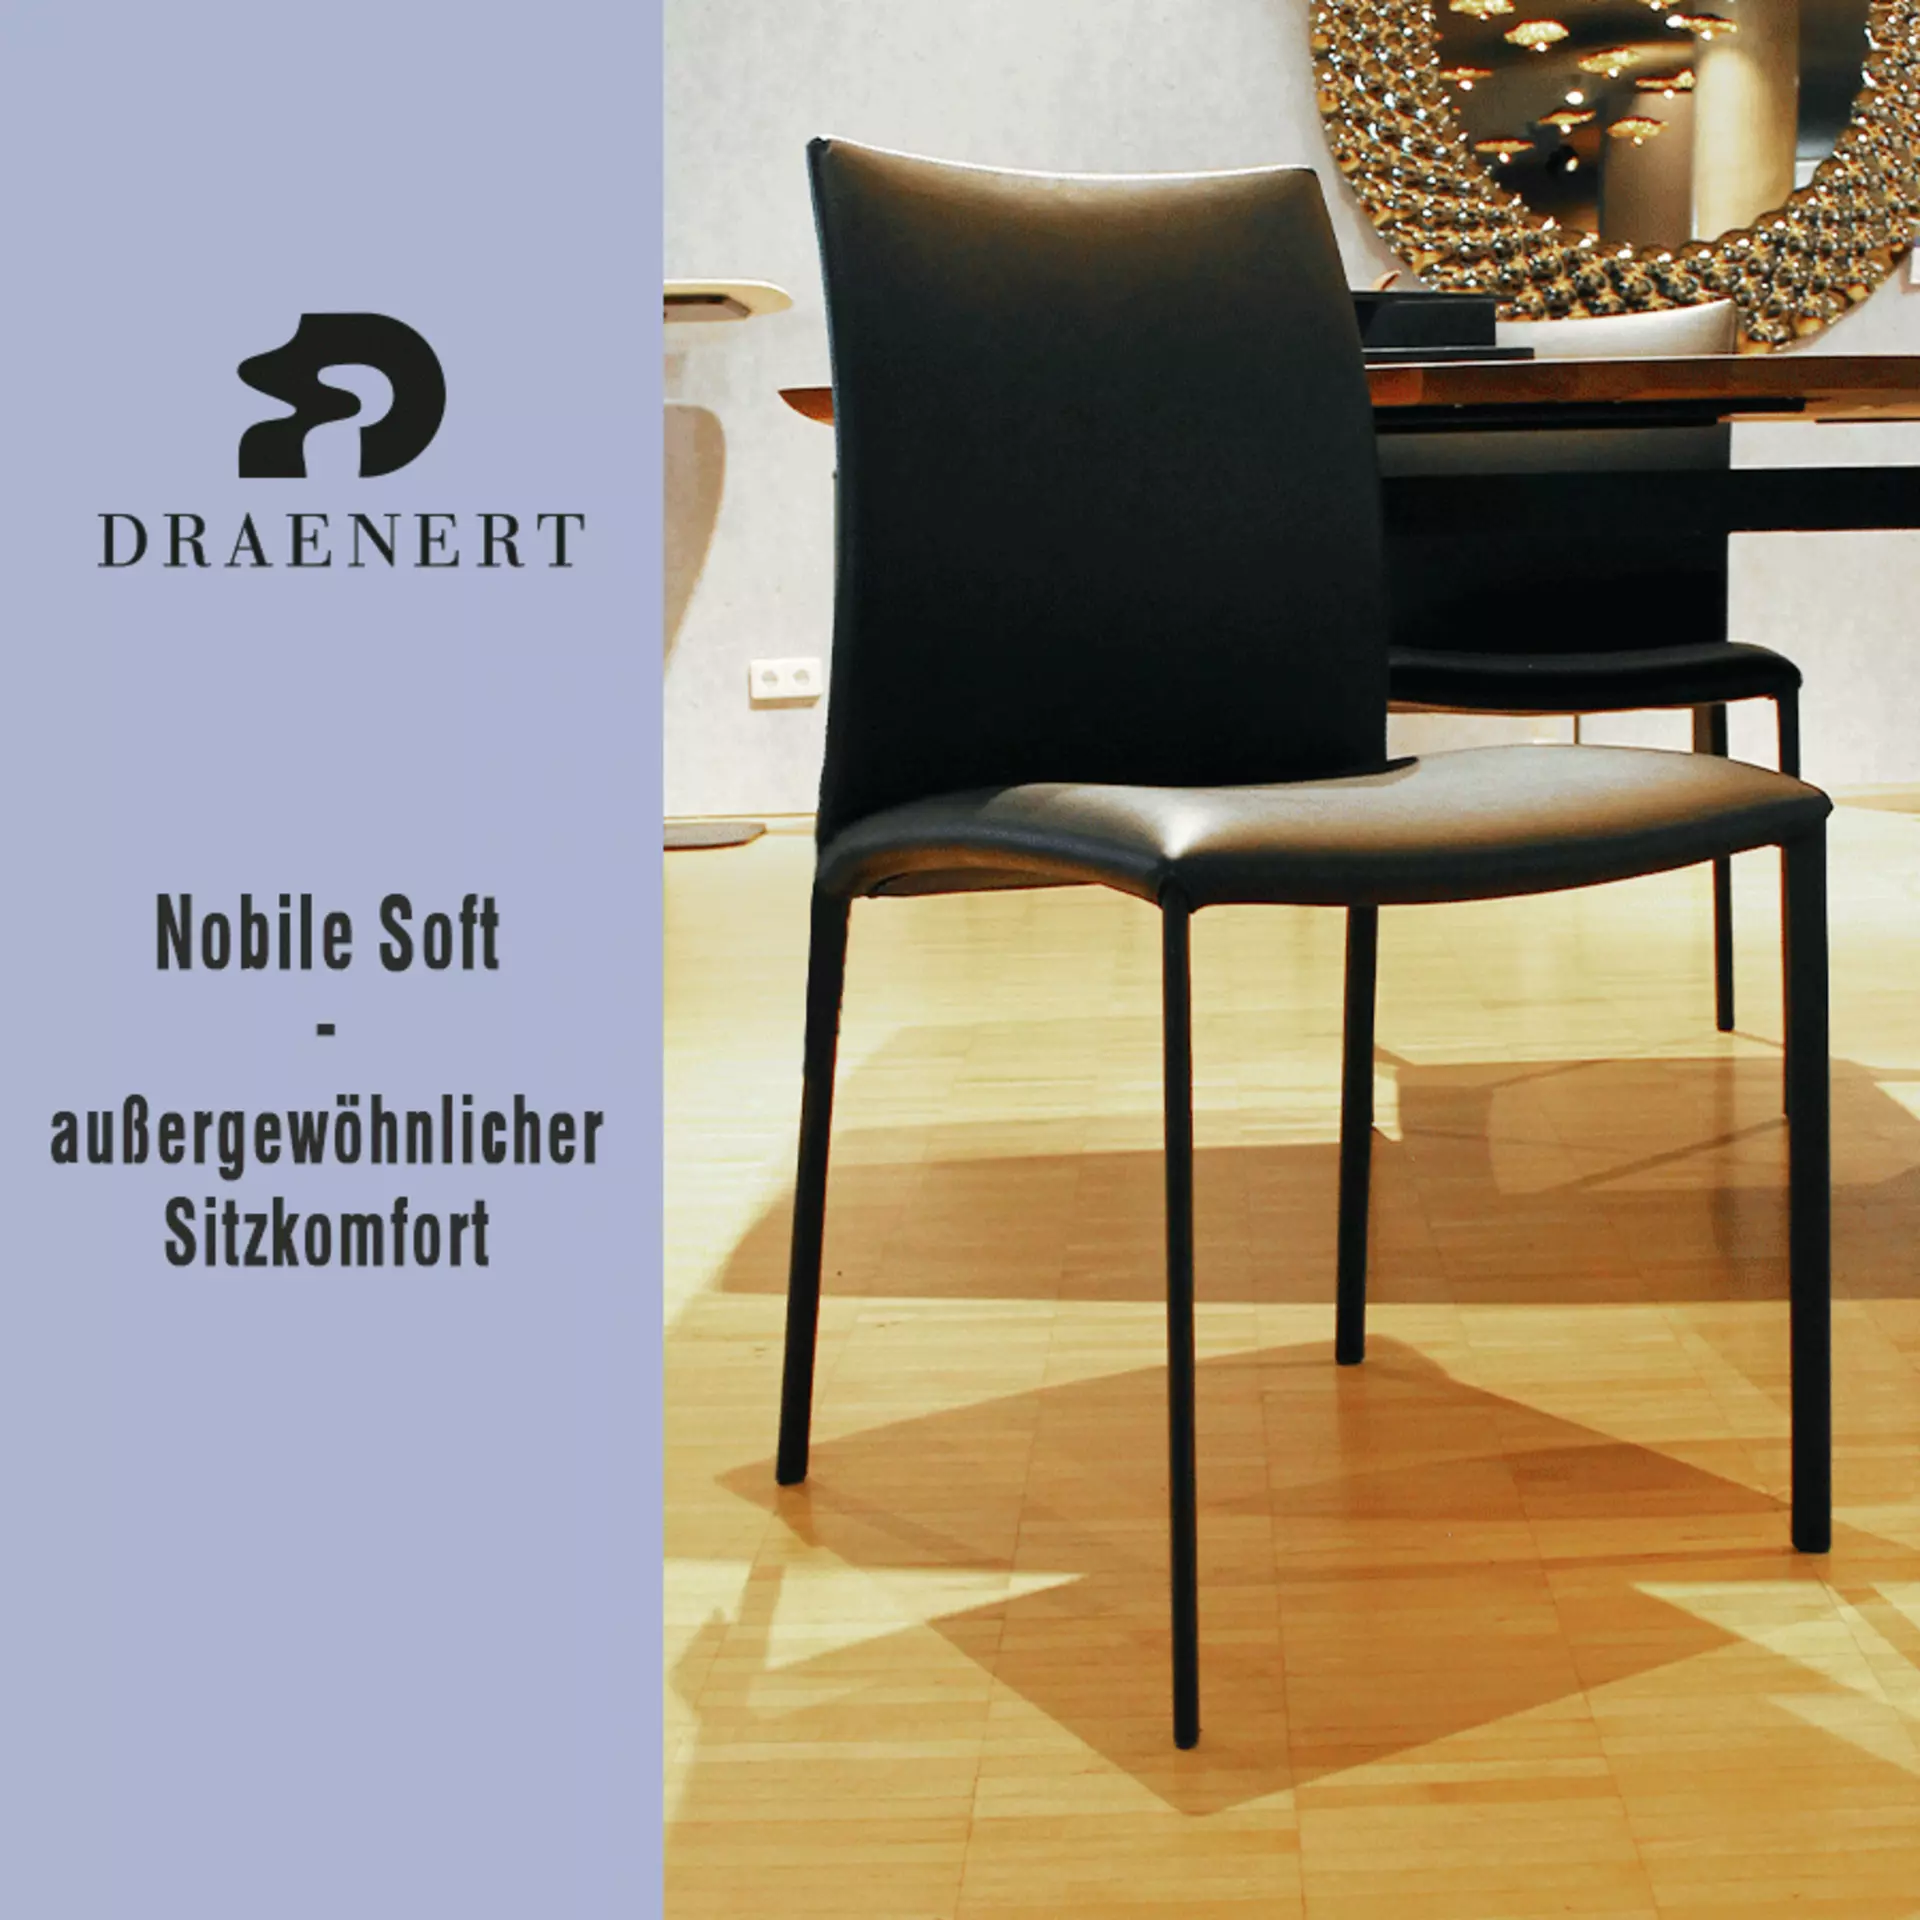 Der Nobile Soft von Draenert - außergewöhnlicher Sitzkomfort. Jetzt das exklusive interni-Angebot entdecken!